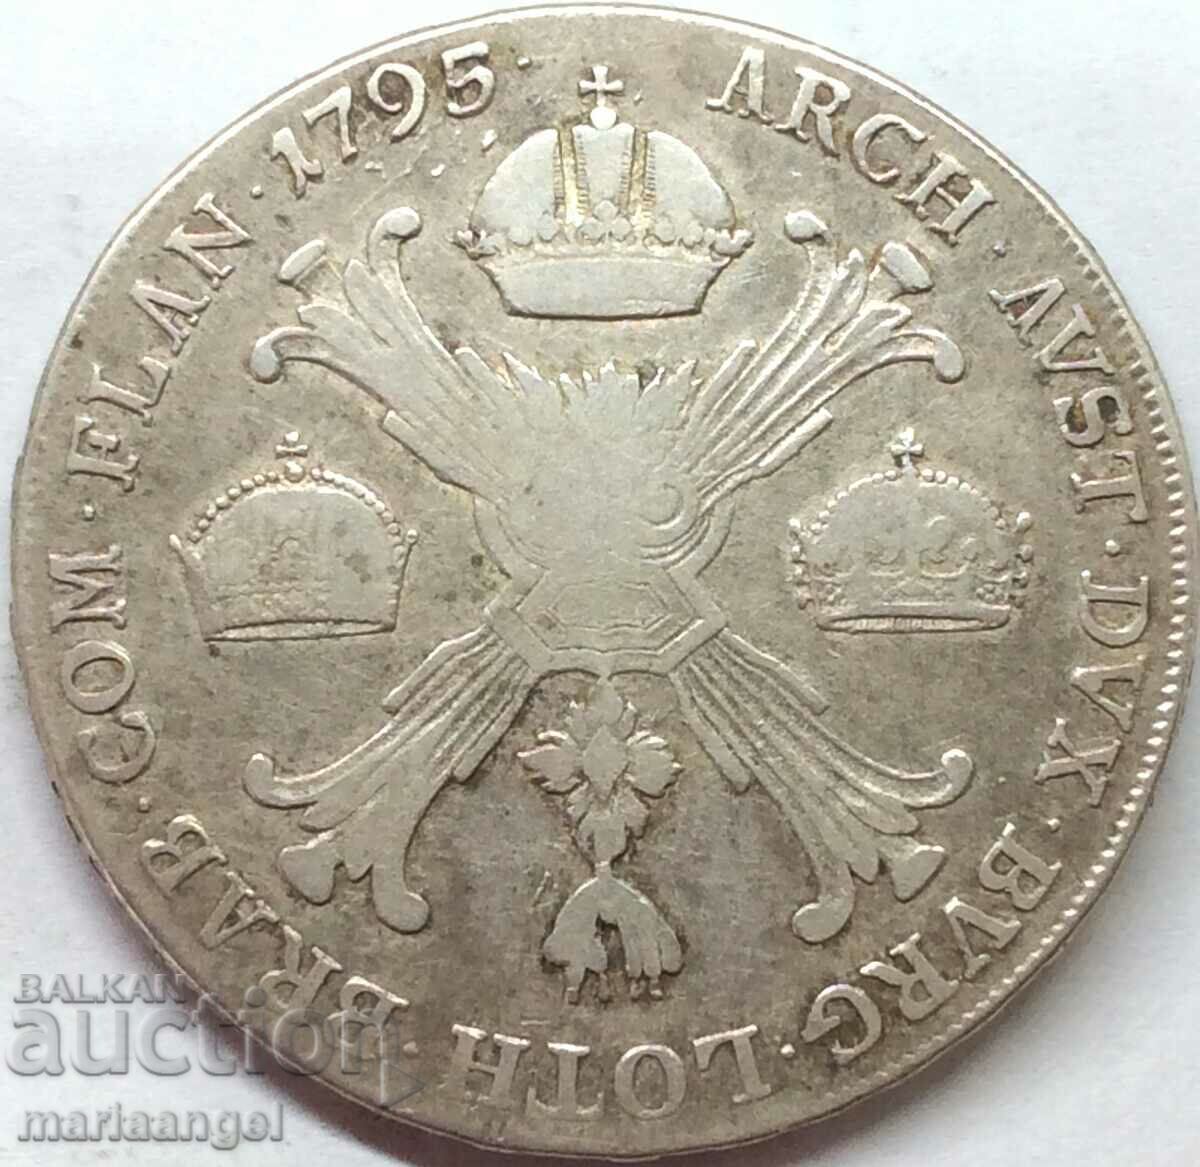 Thaler 1795 Austrian Netherlands Franz II N-Burgau silver